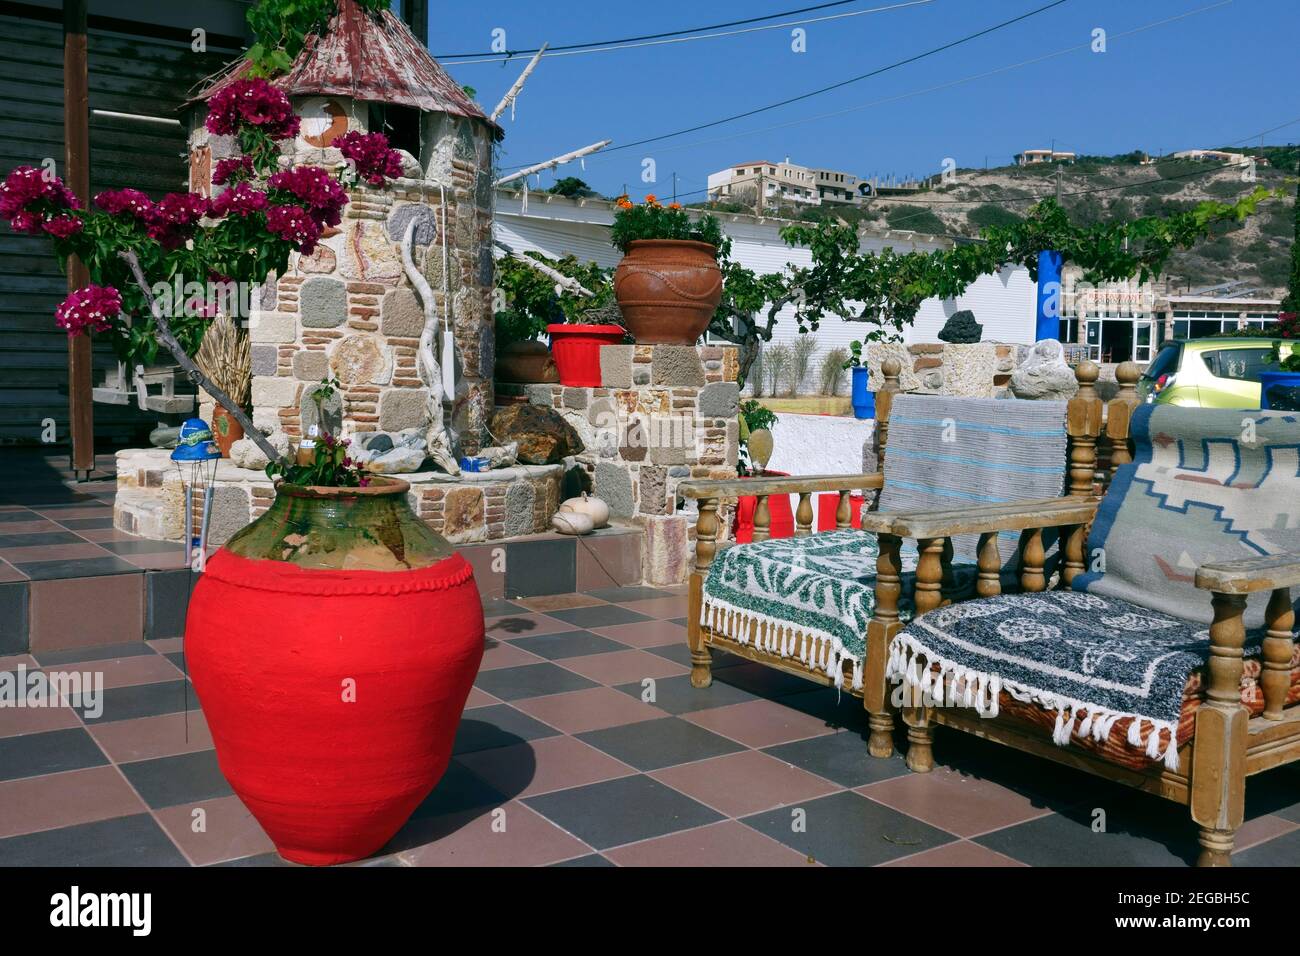 Terraza al aire libre jardín de una casa típica en el griego isla de Kos Foto de stock